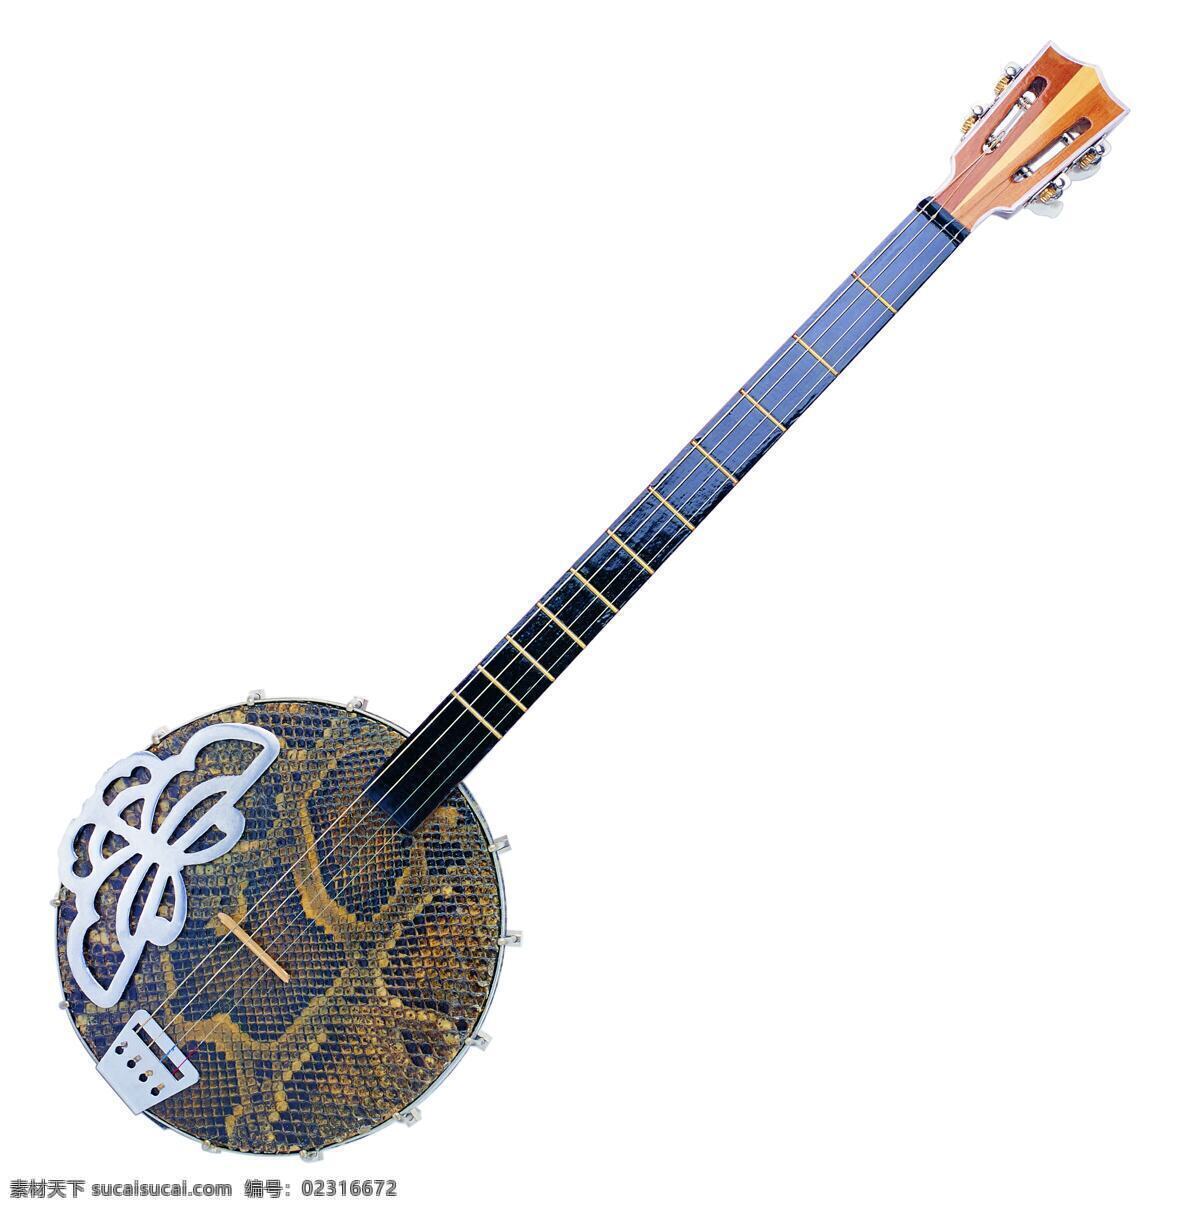 乐器免费下载 乐器 音乐器材 中式乐器 文化艺术